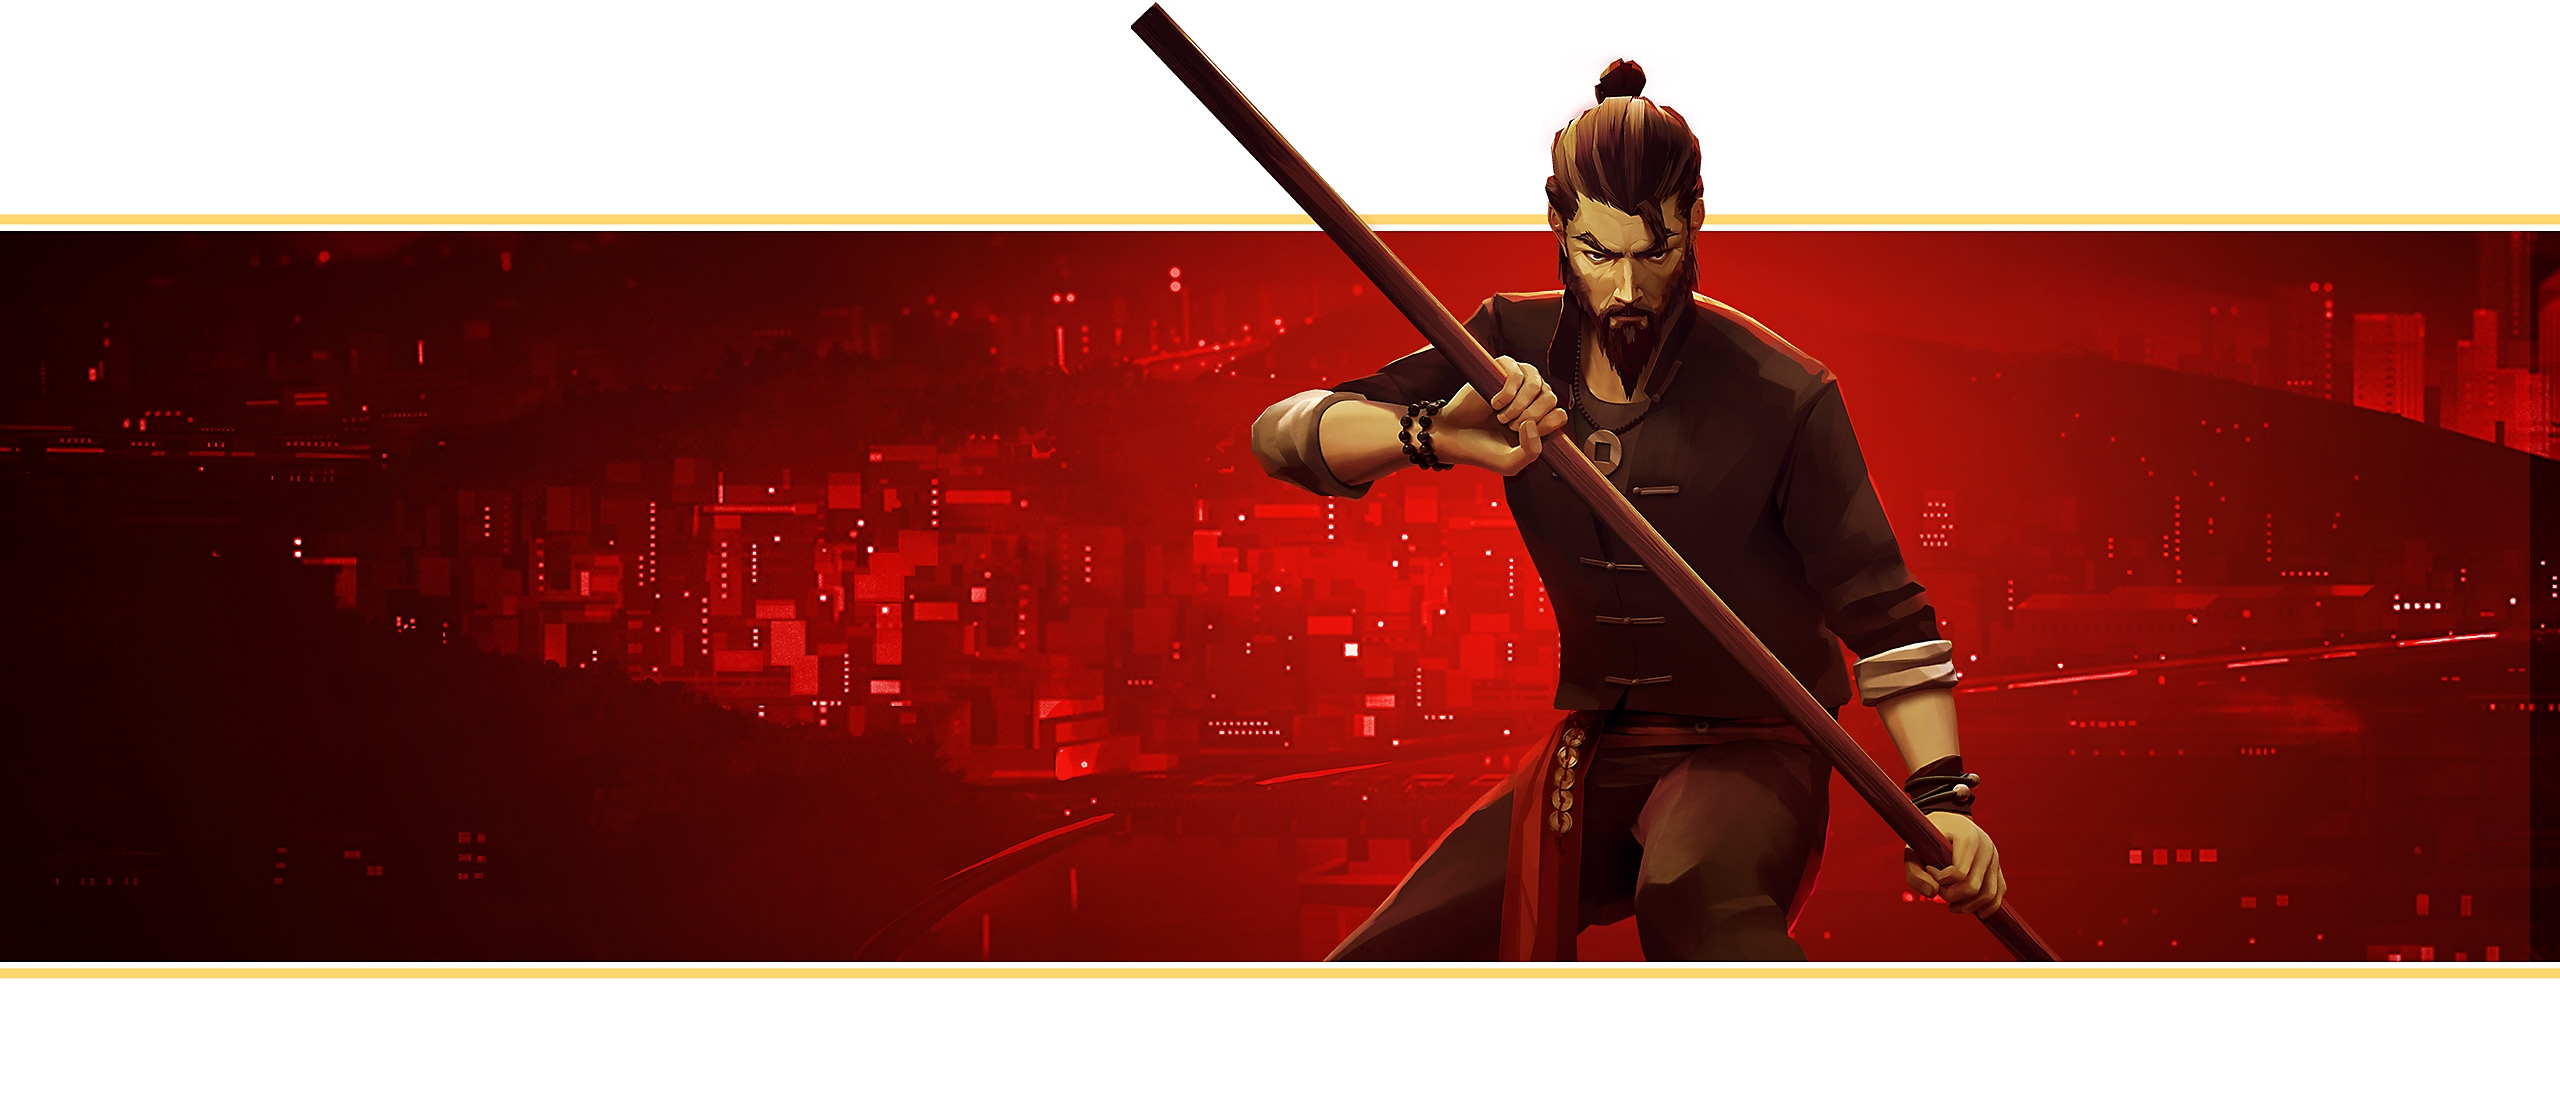 Banner de destaque de Sifu baseado na arte do jogo. O personagem principal, de frente, segura o bastão de madeira com as duas mãos.